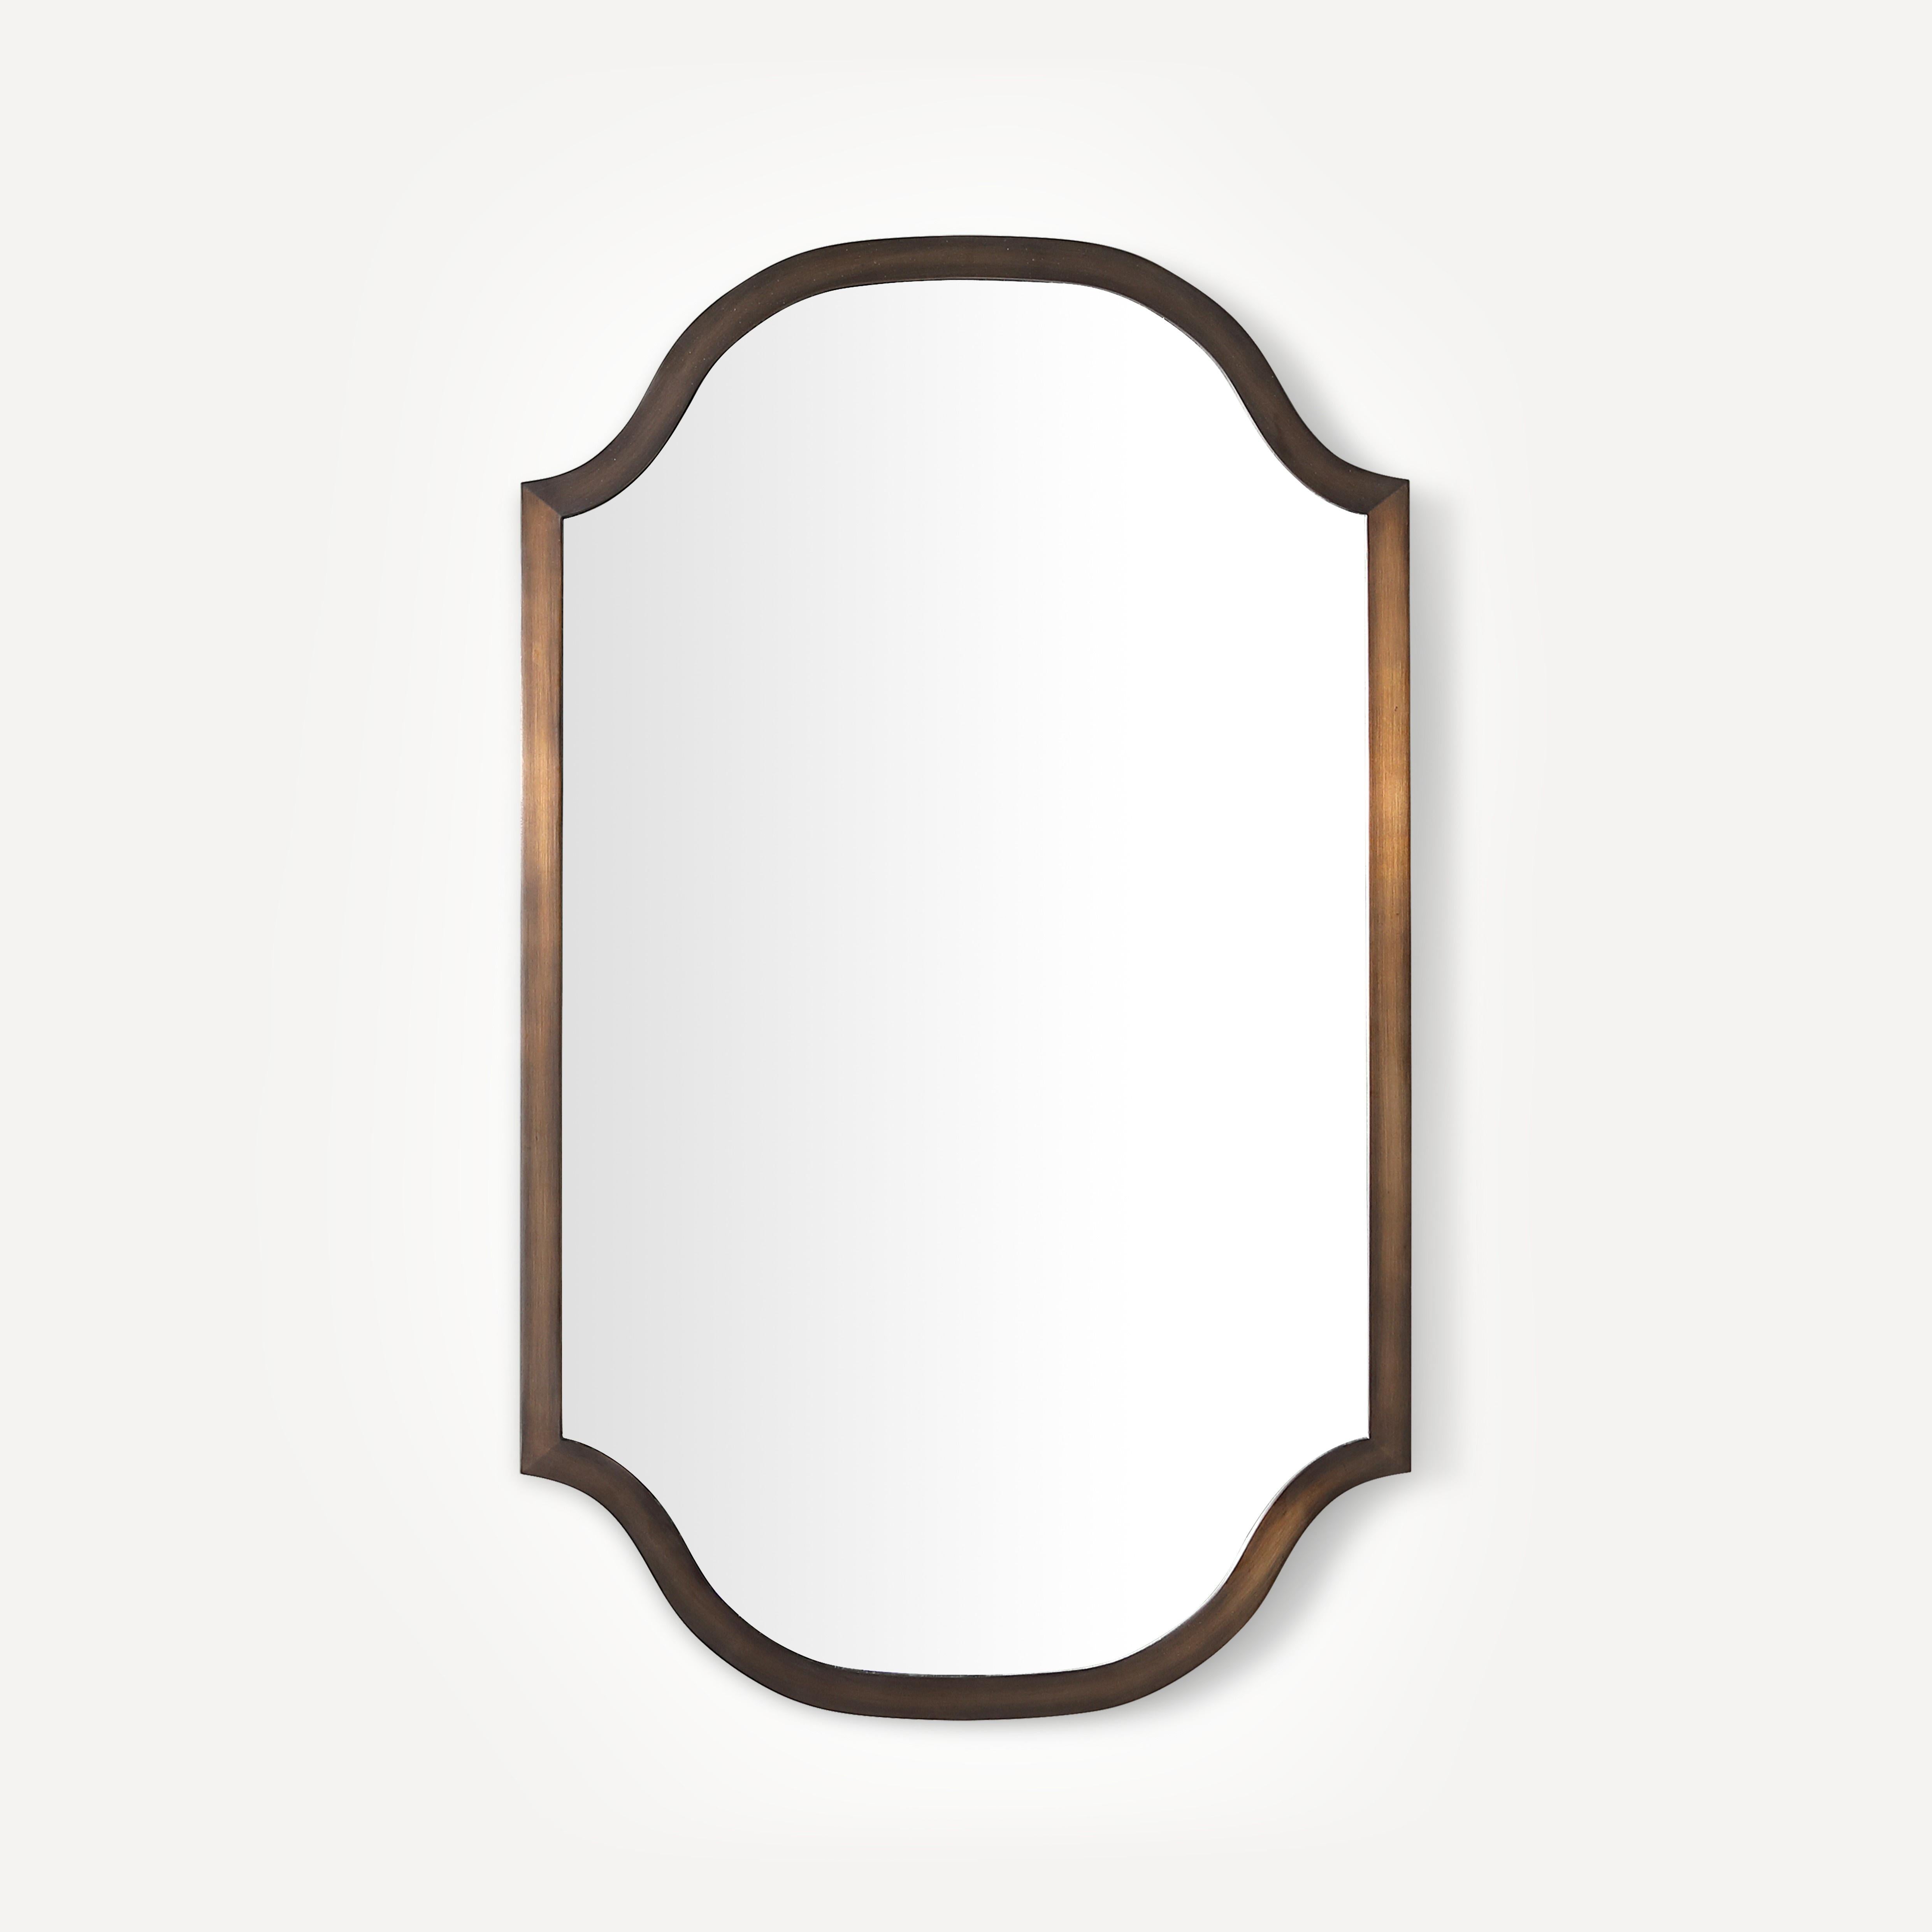 Robern Scalloped Metal Mirror, 24"x 40"x 1-3/16"